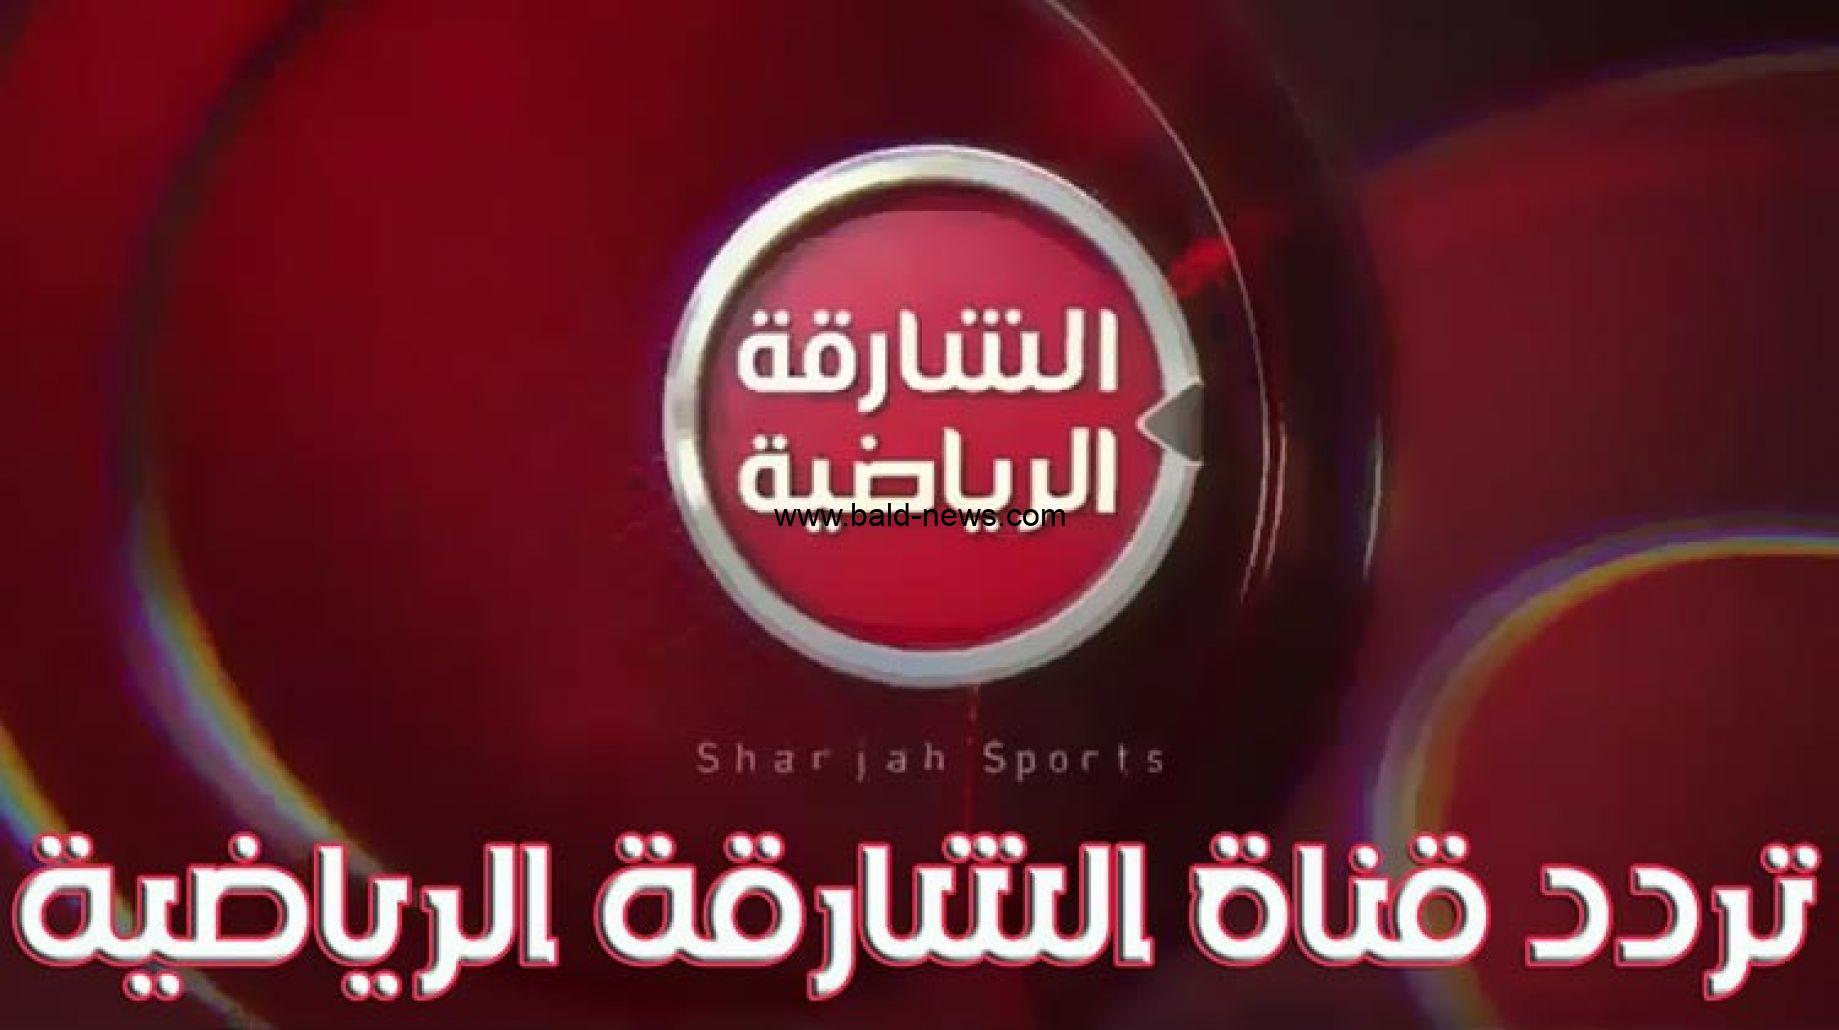 تردد قناة الشارقة الرياضية الجديد Sharjah Sport TV 2022 على النايل سات